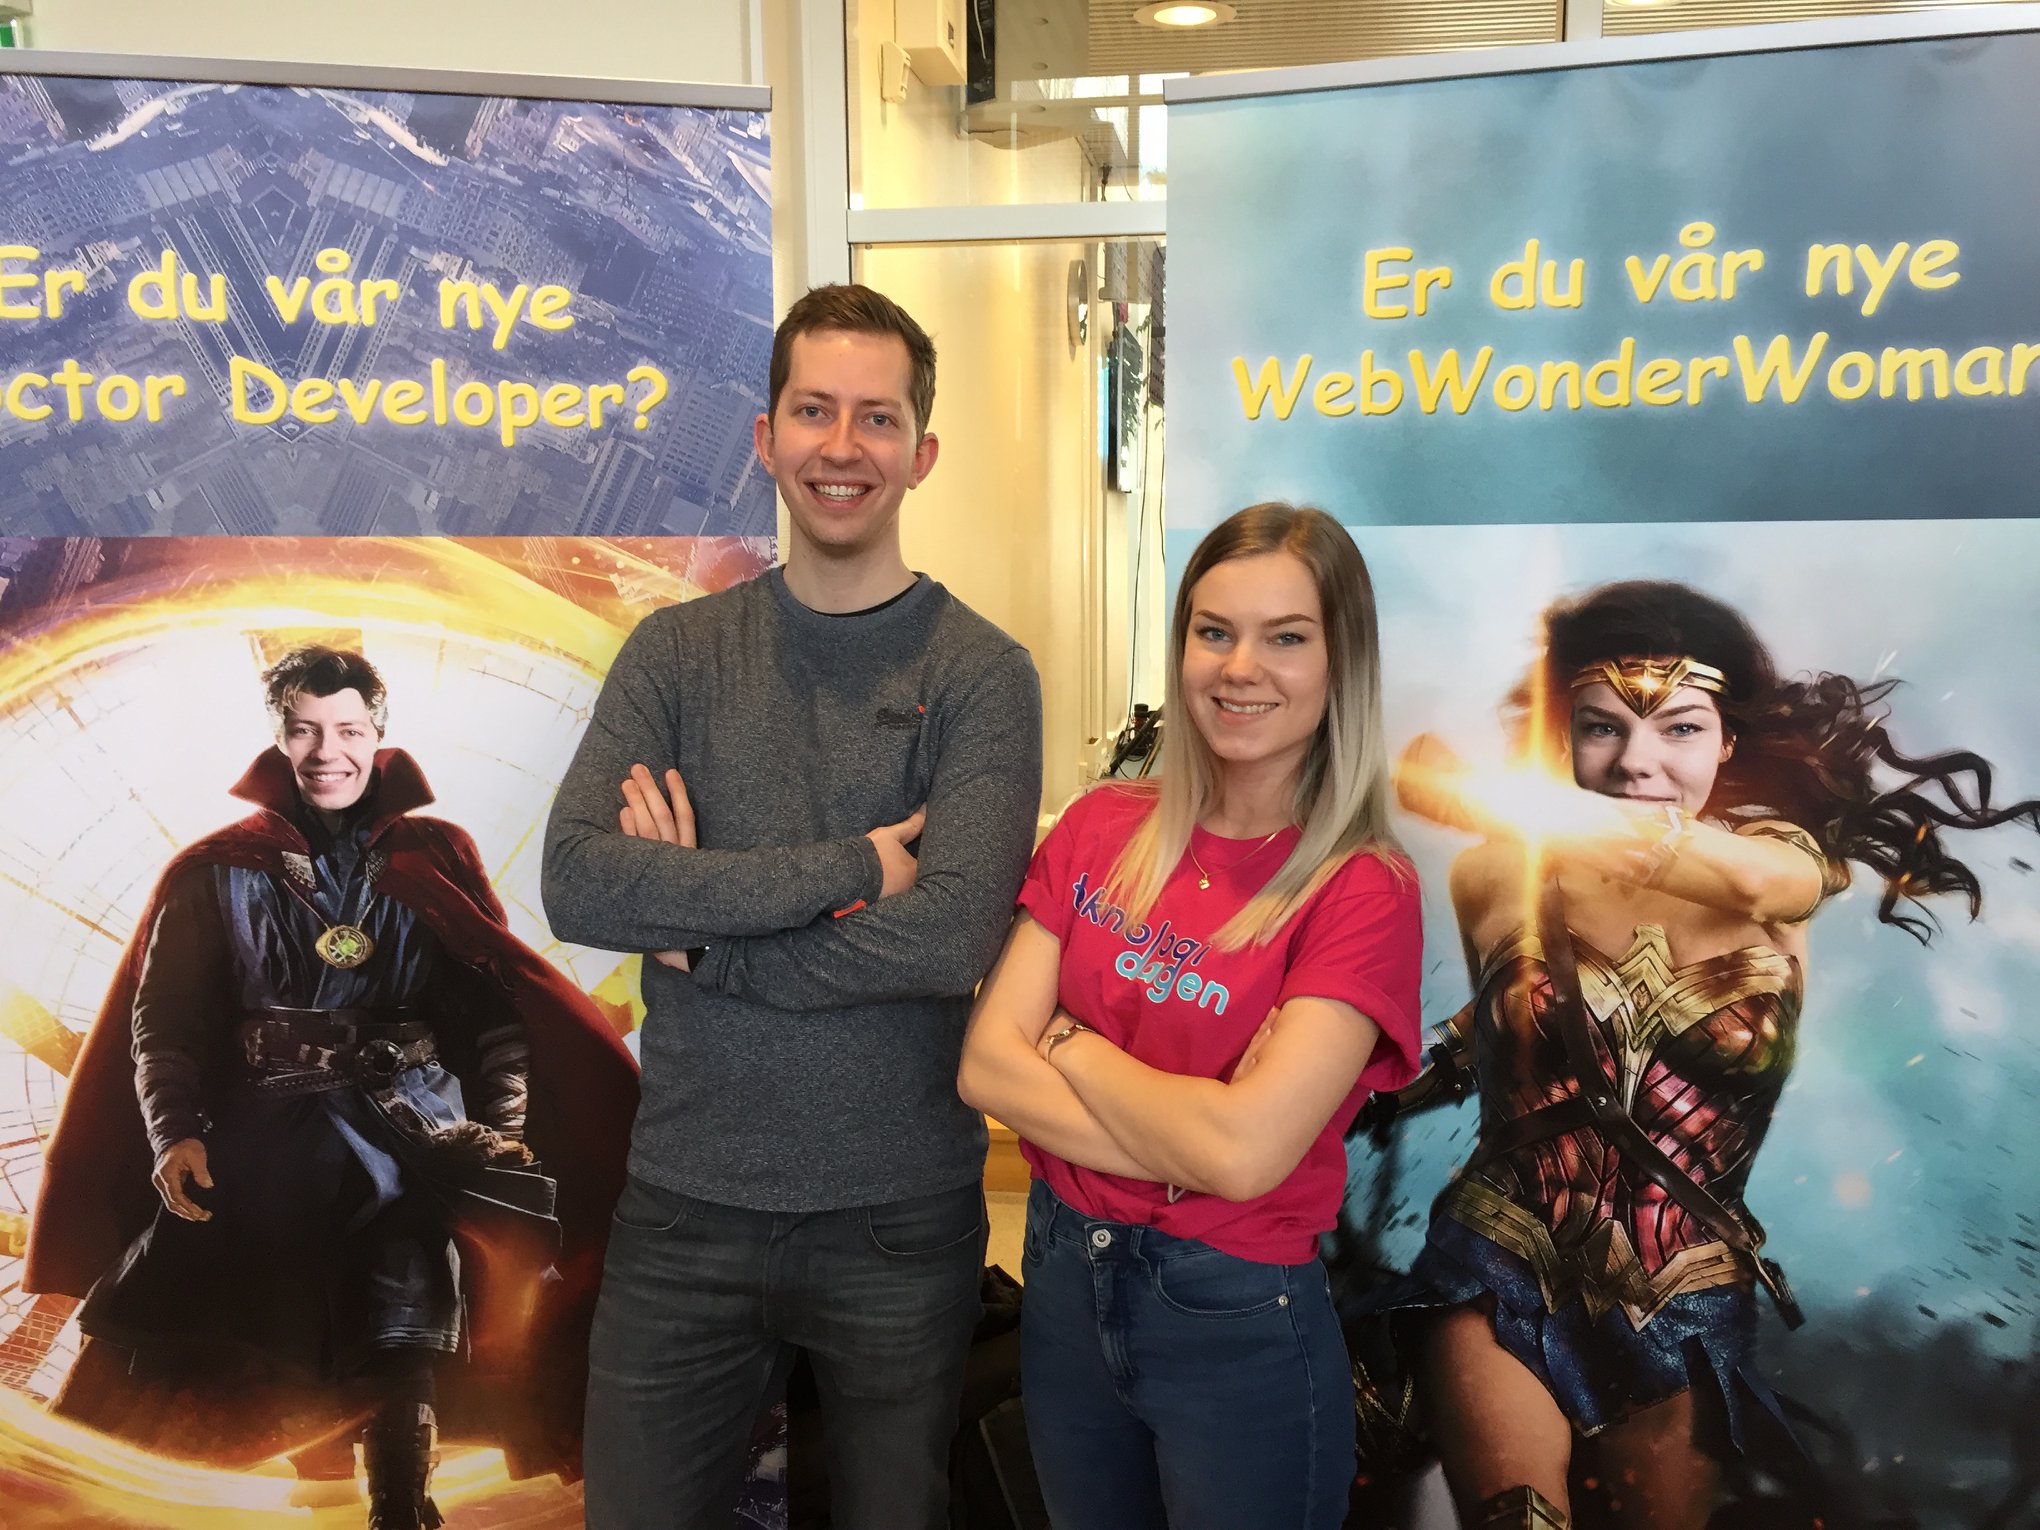 Elise og Jørgen som står foran to reklameplakater for aplia